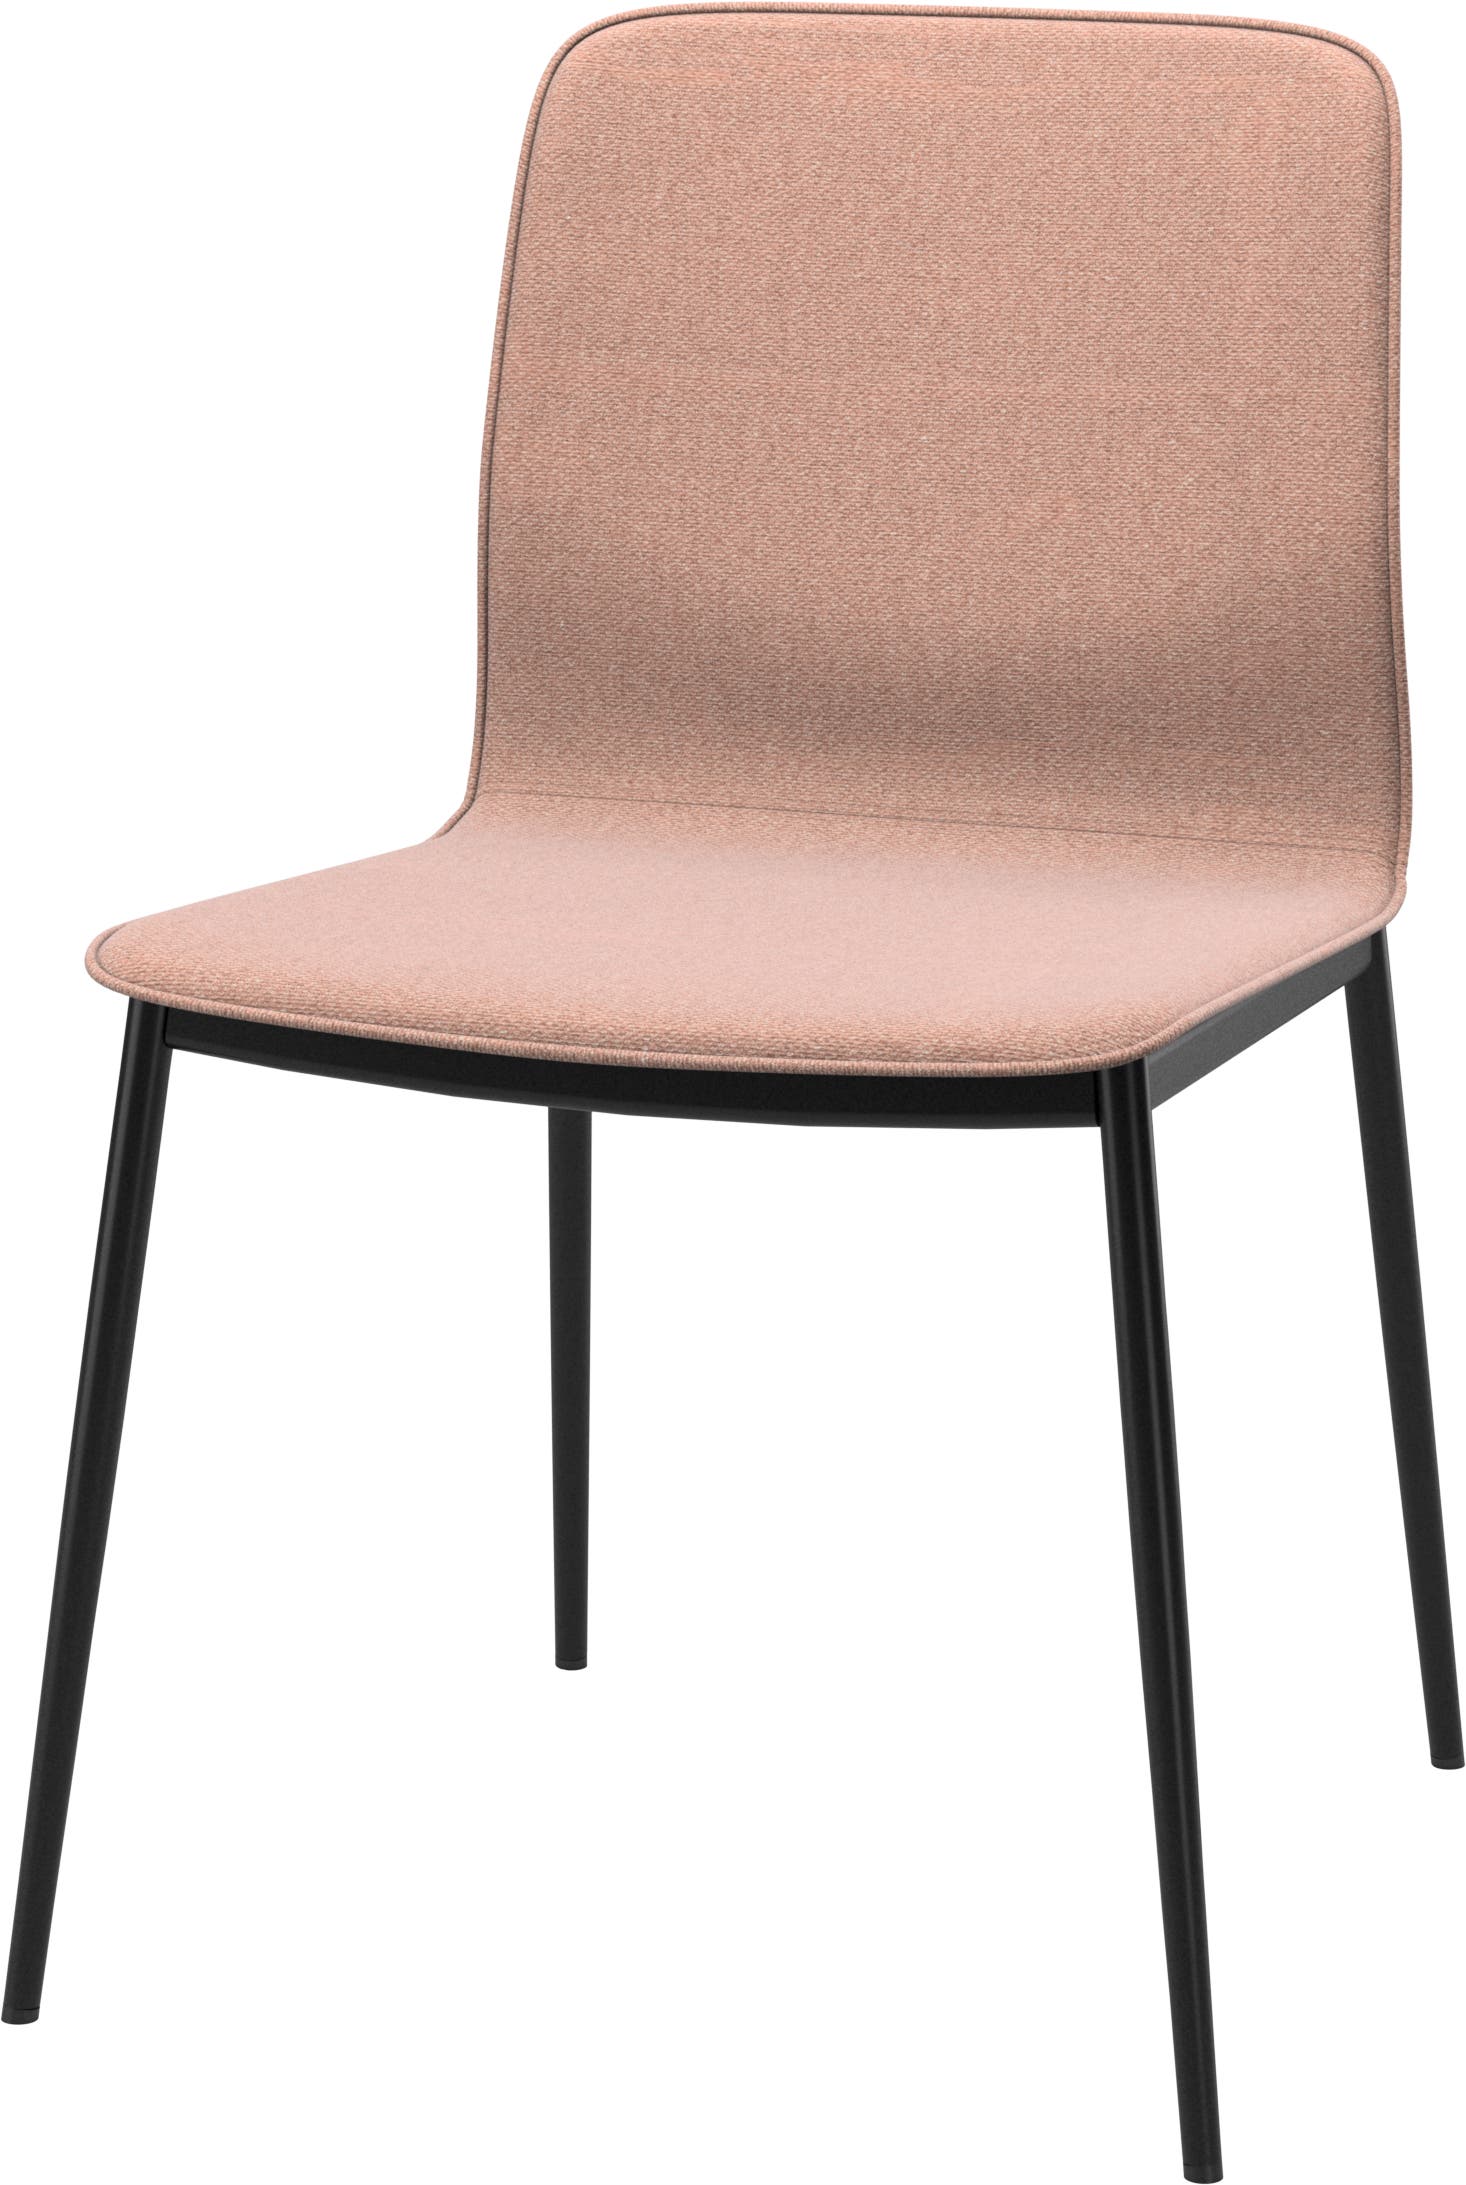 Newport jídelní židle